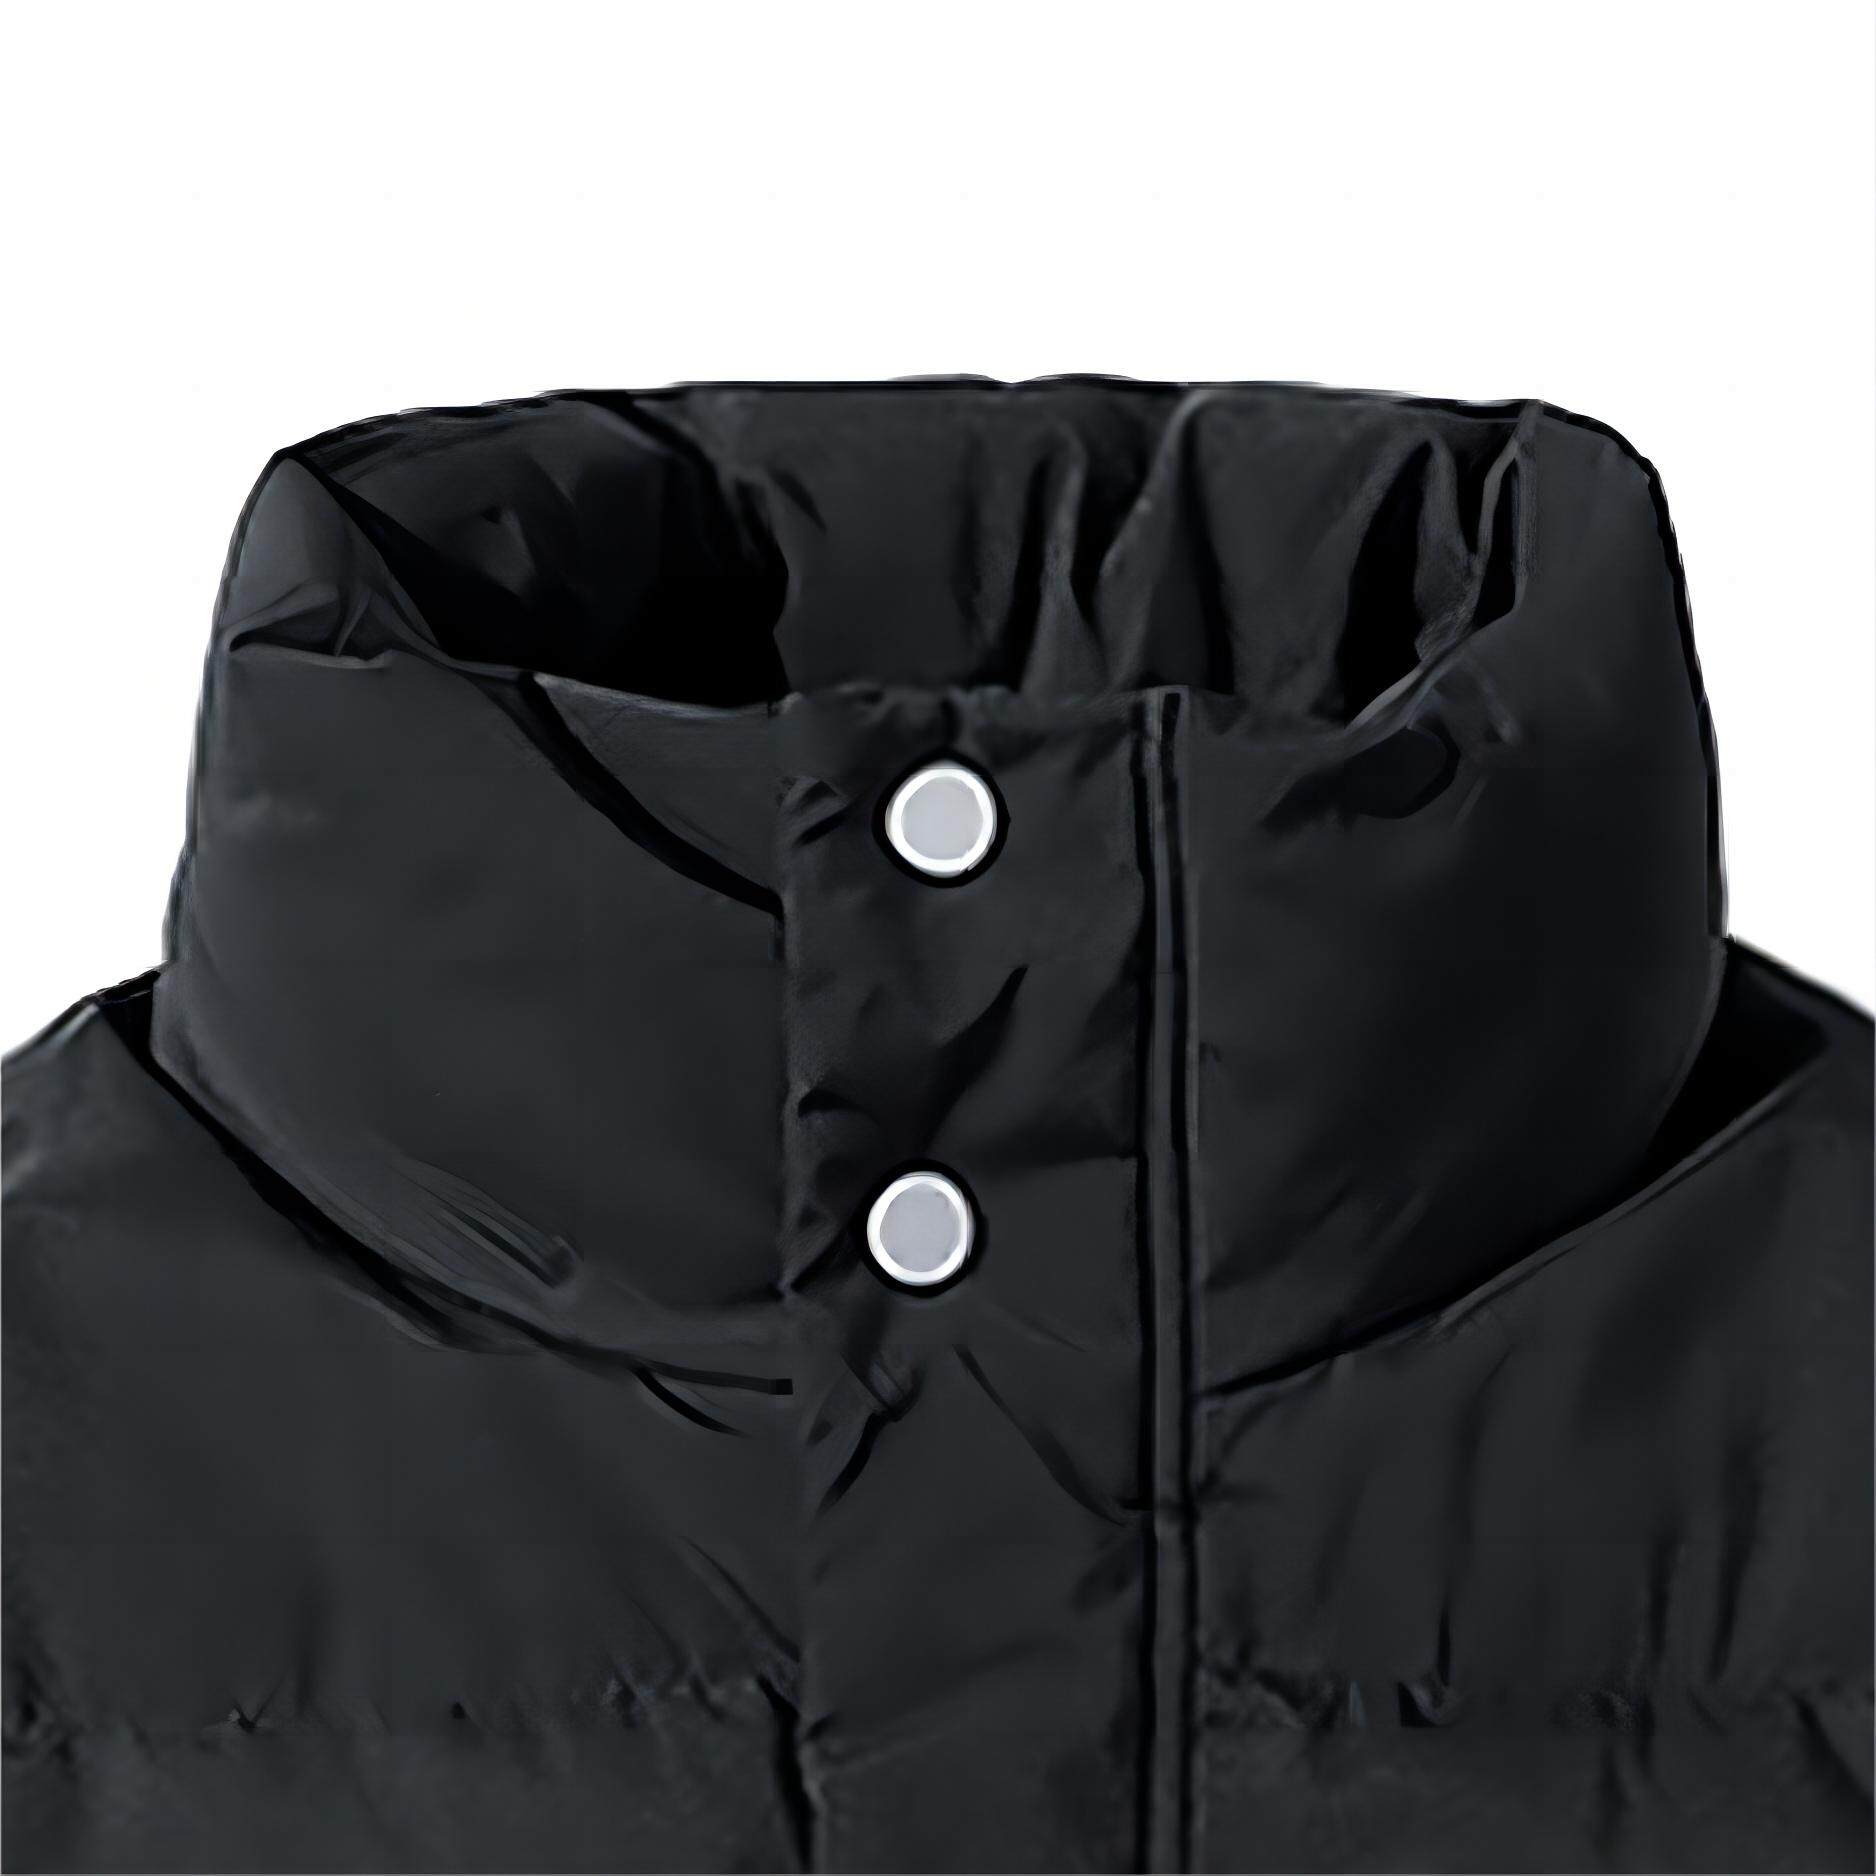 Jacket, Puffer Jacket, 80% Duck Down  Padded, Thicken, Letter Print Hidden Zipper Snap Button Turtleneck